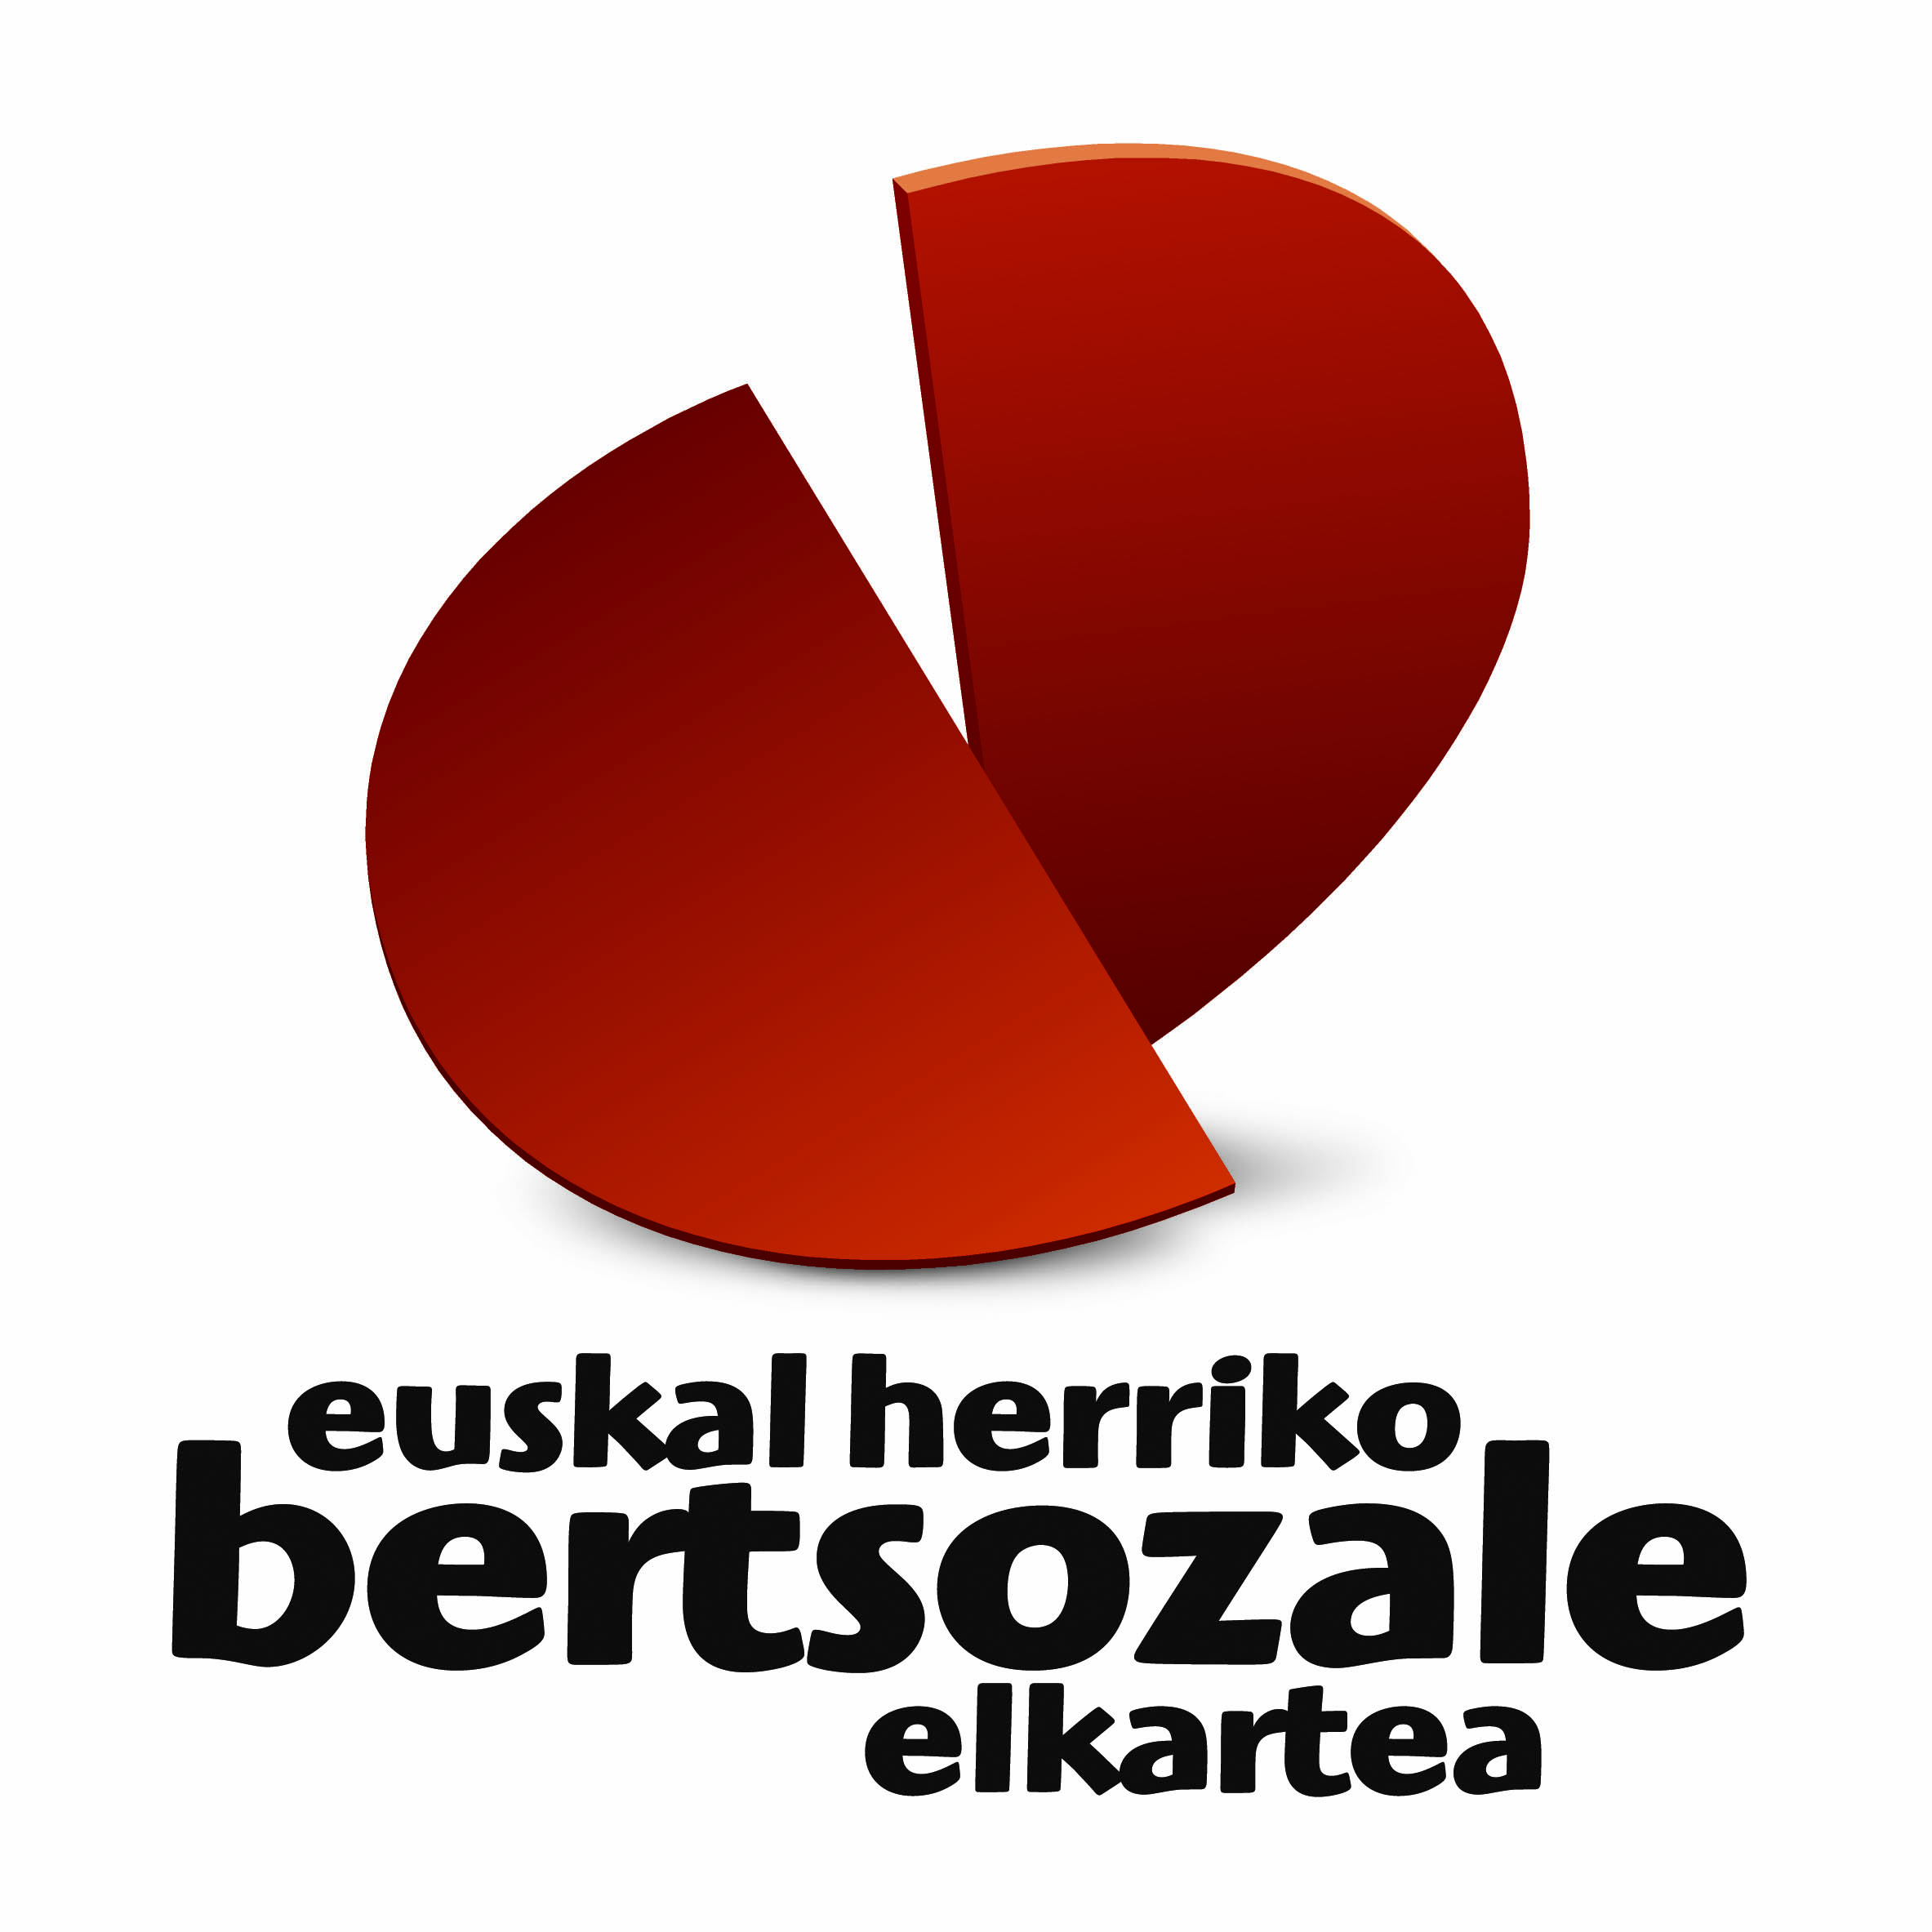 Euskal Herriko Bertsozale Elkarteak koordinatzaile orokorra behar du